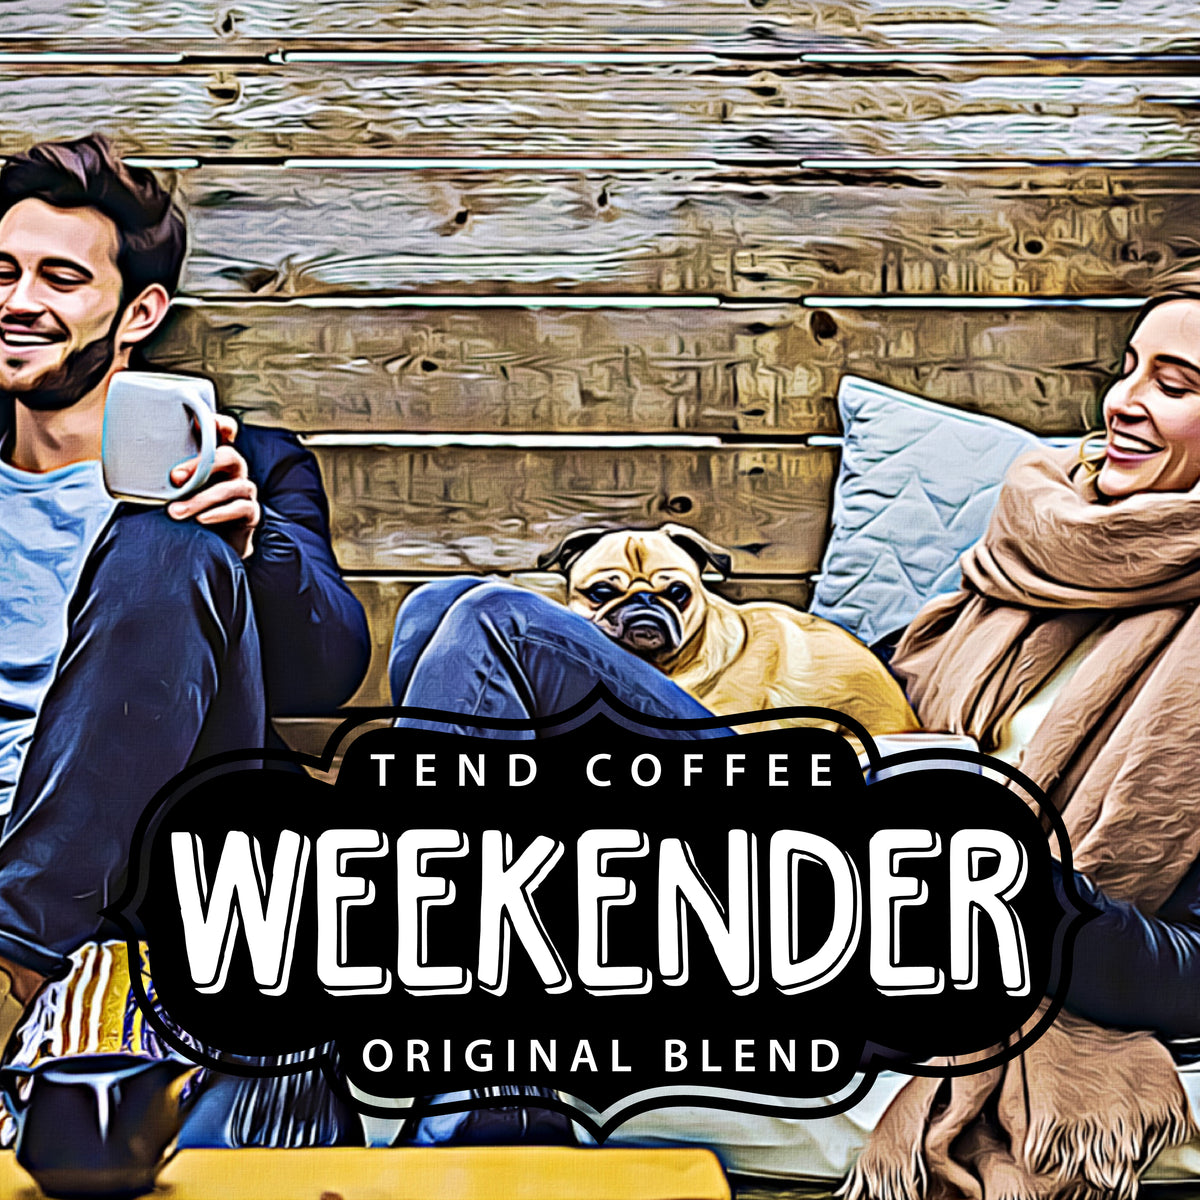 Organic Grass Puppy Blend – Tend Coffee